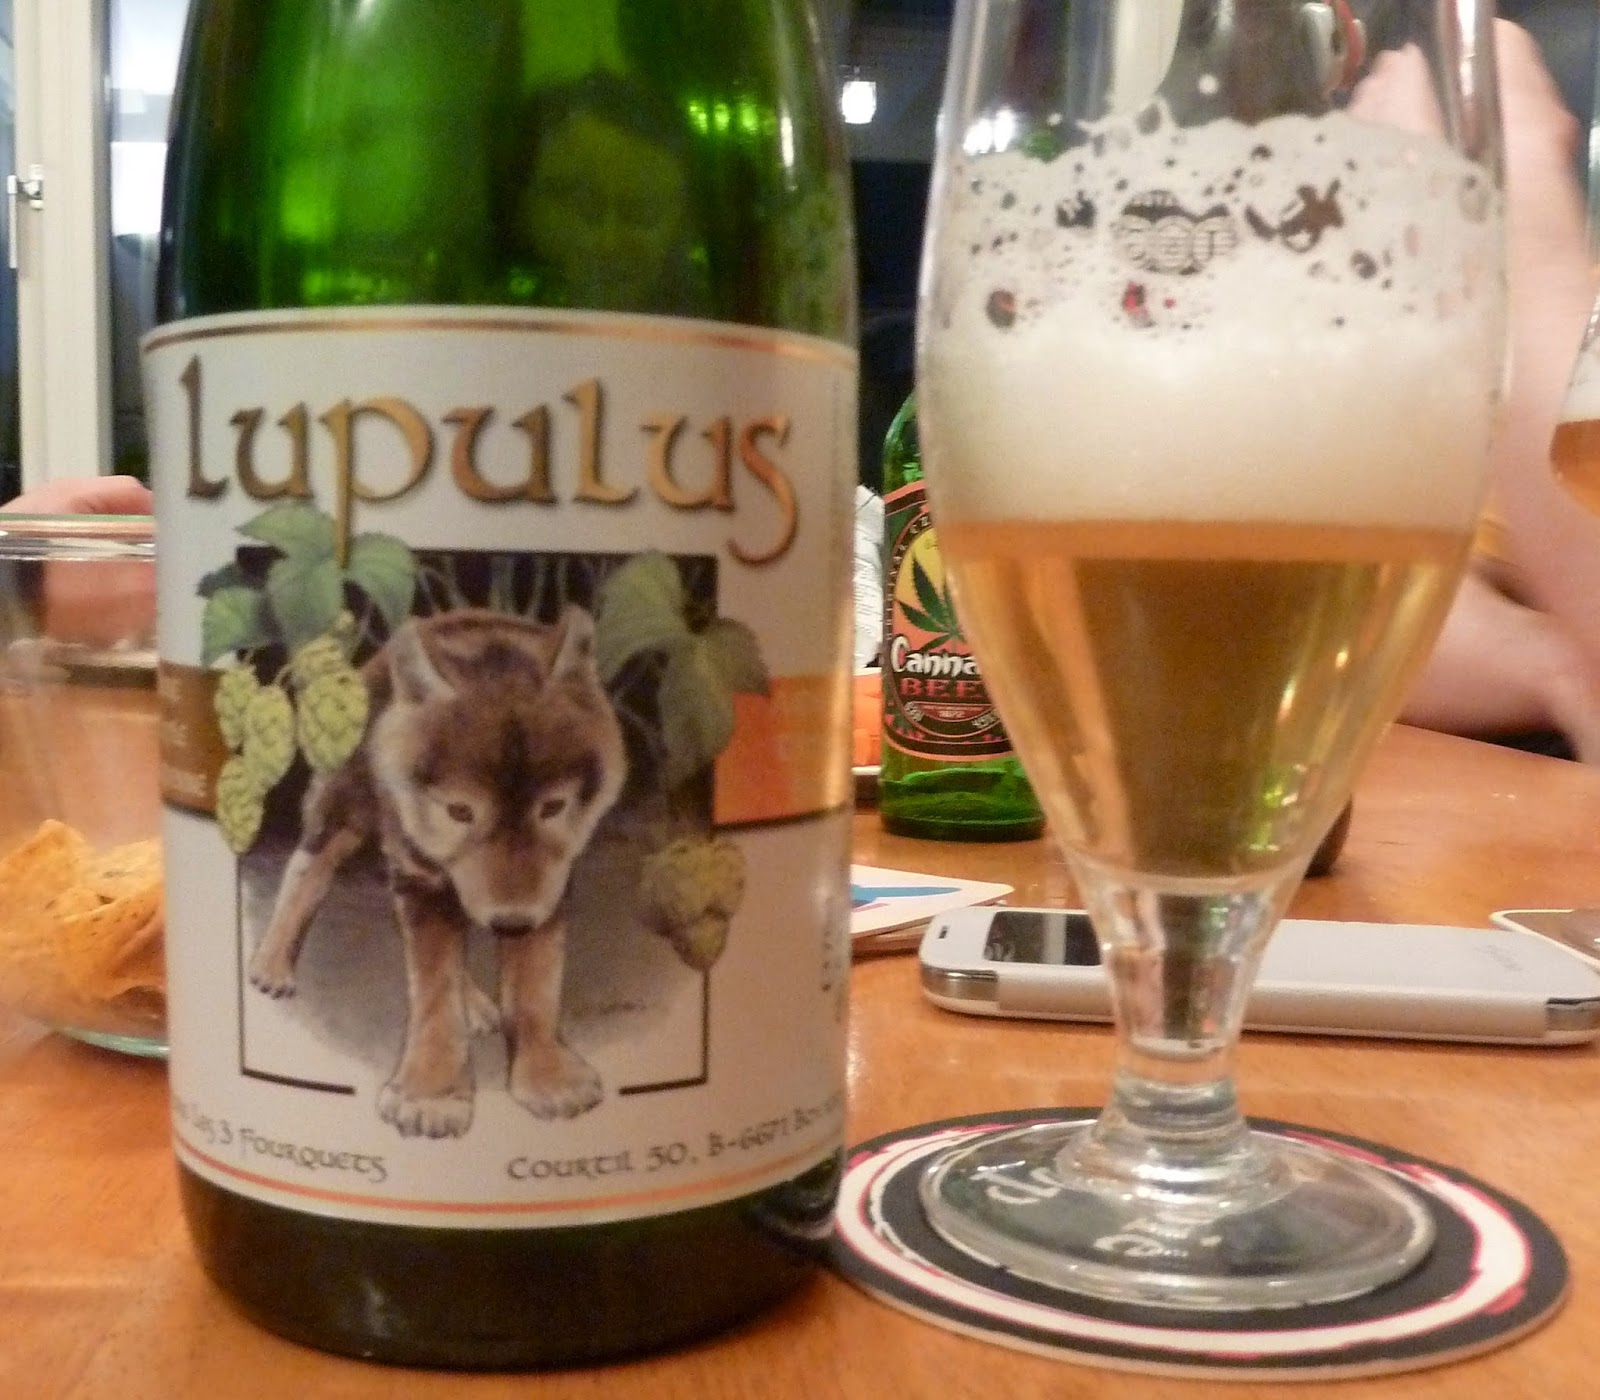 Lupulus Blonde - Lupulus - Bière Belge